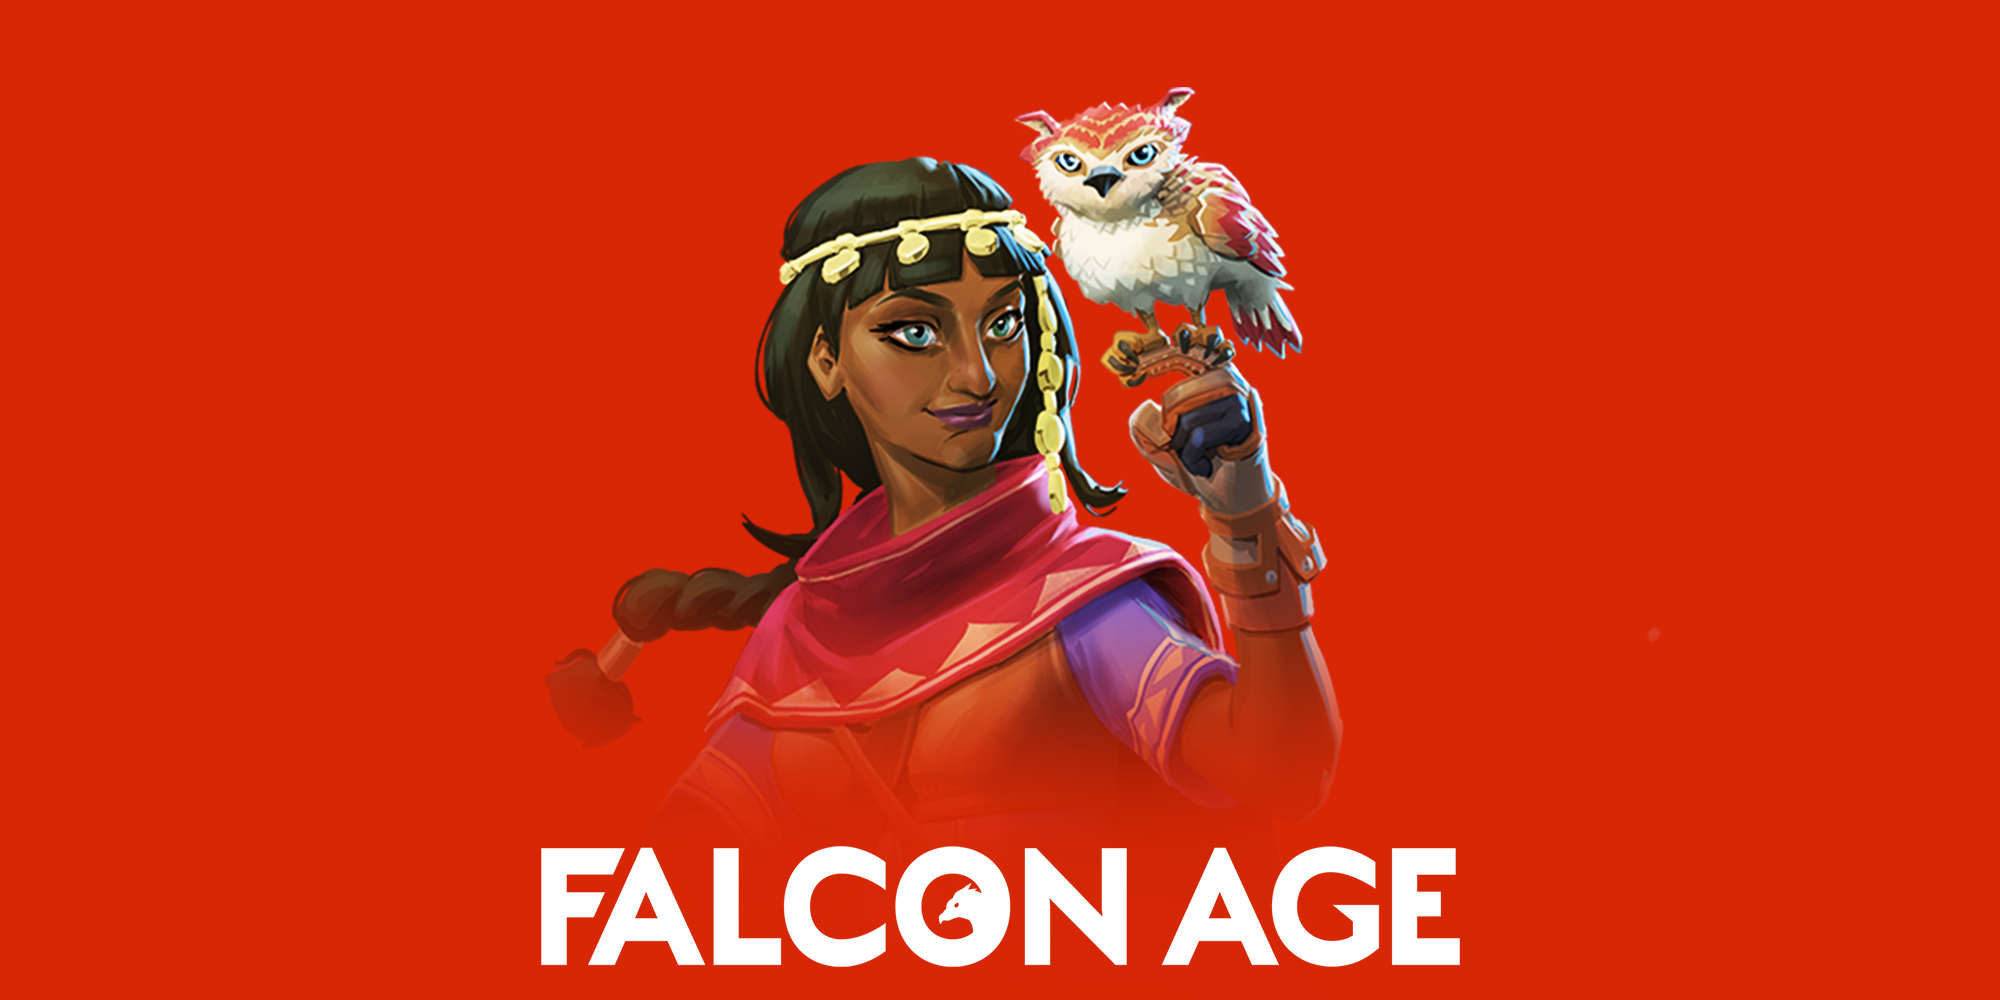 Falcon age Вики. Falcon age. Ultra age Nintendo Switch. Broken age Nintendo Switch.